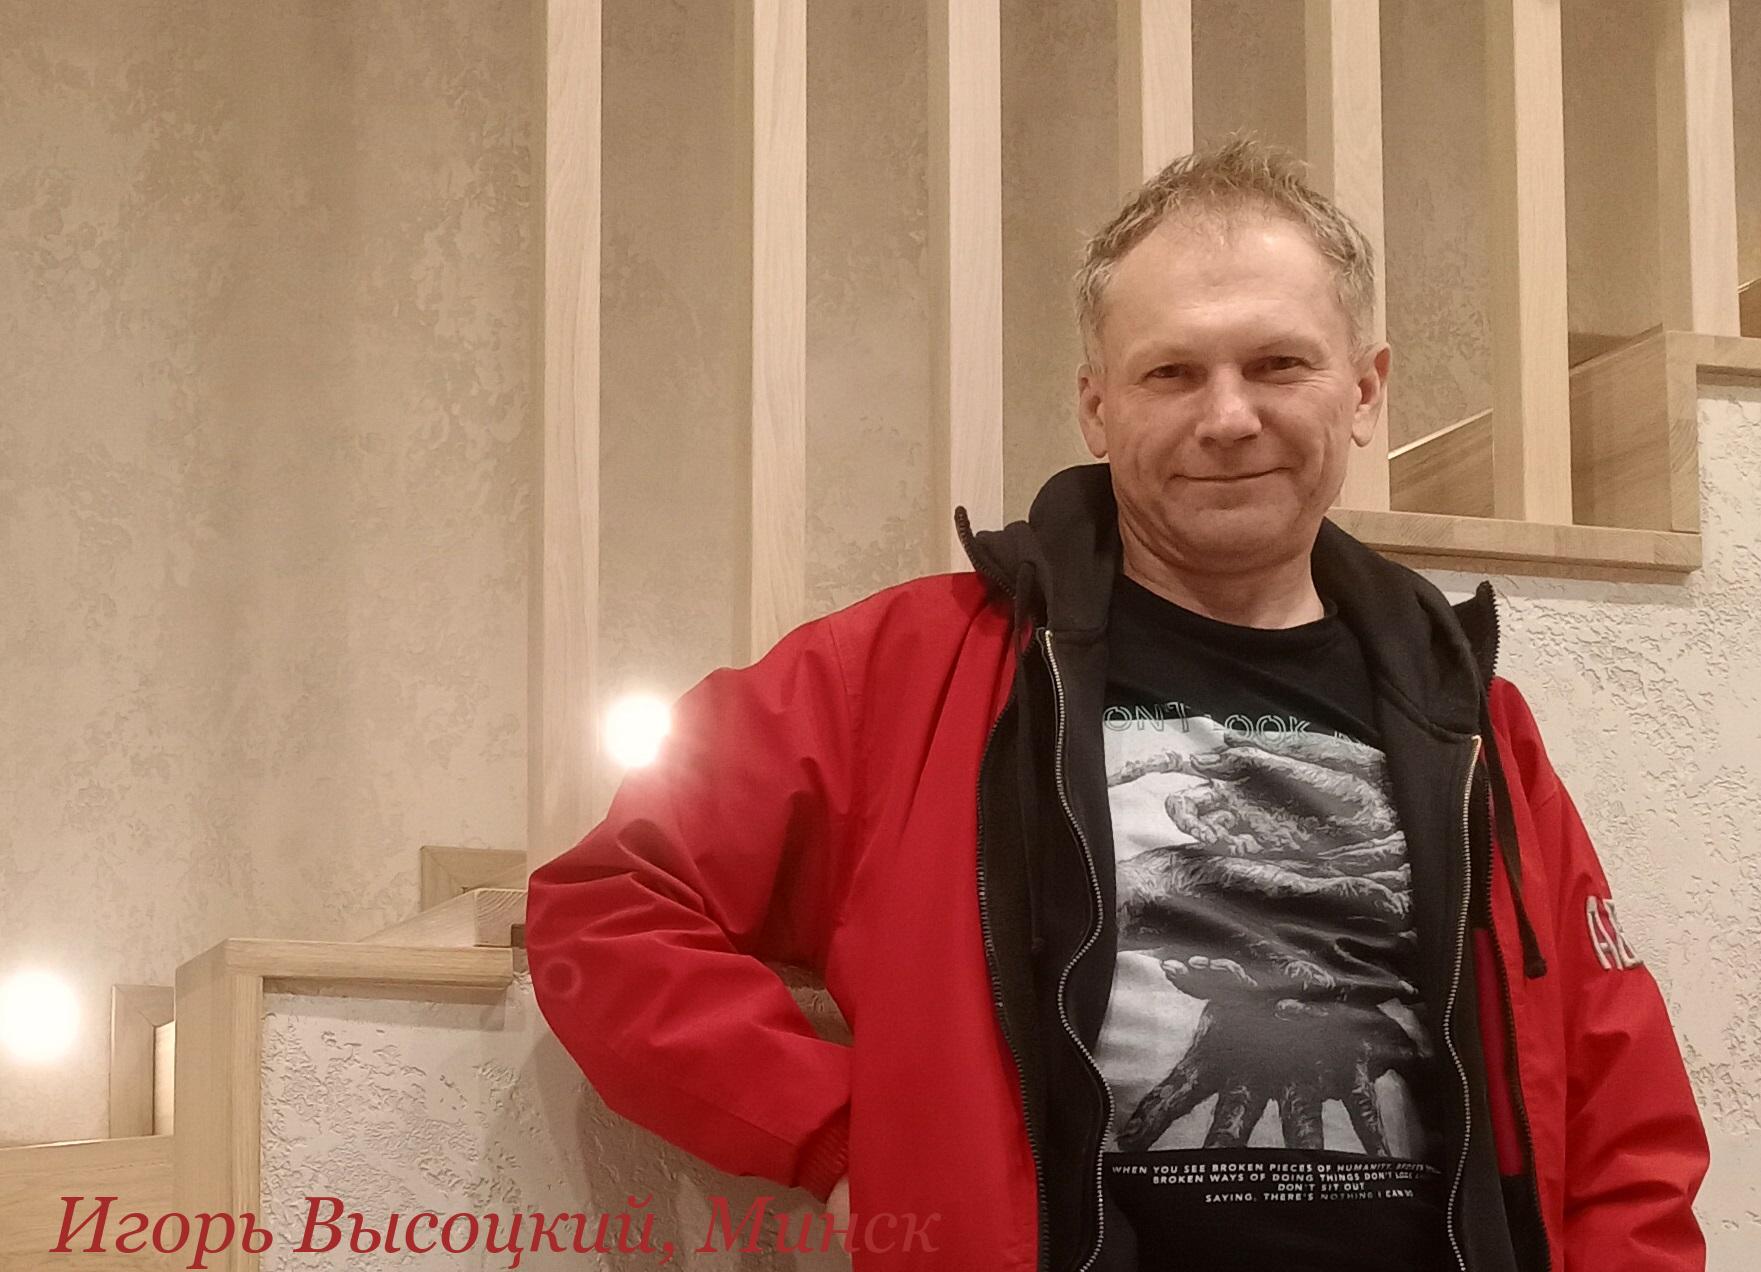 Межэтажные Лестницы Игоря Высоцкого, Минск - Модное ограждение для лестницы из брусков